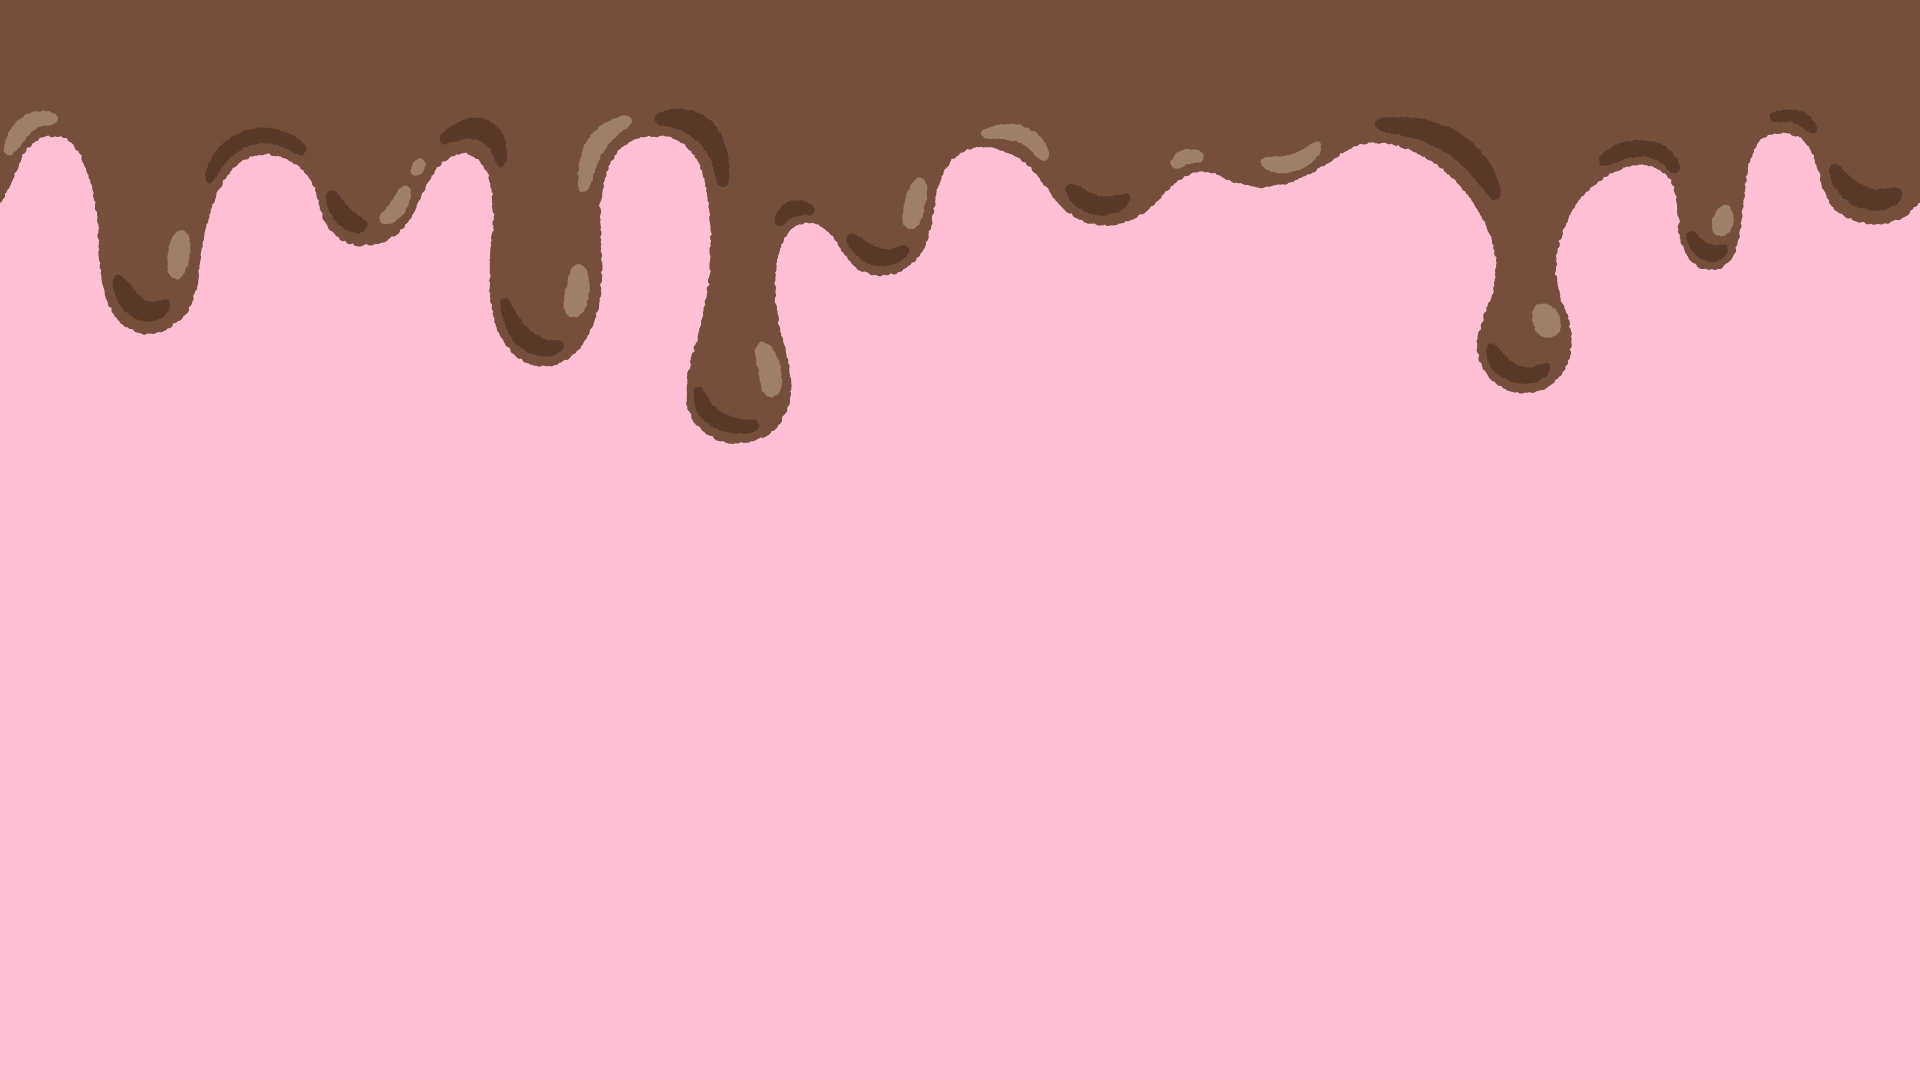 溶けたチョコレートの背景素材のフリーイラスト Clip art of melted chocolate background